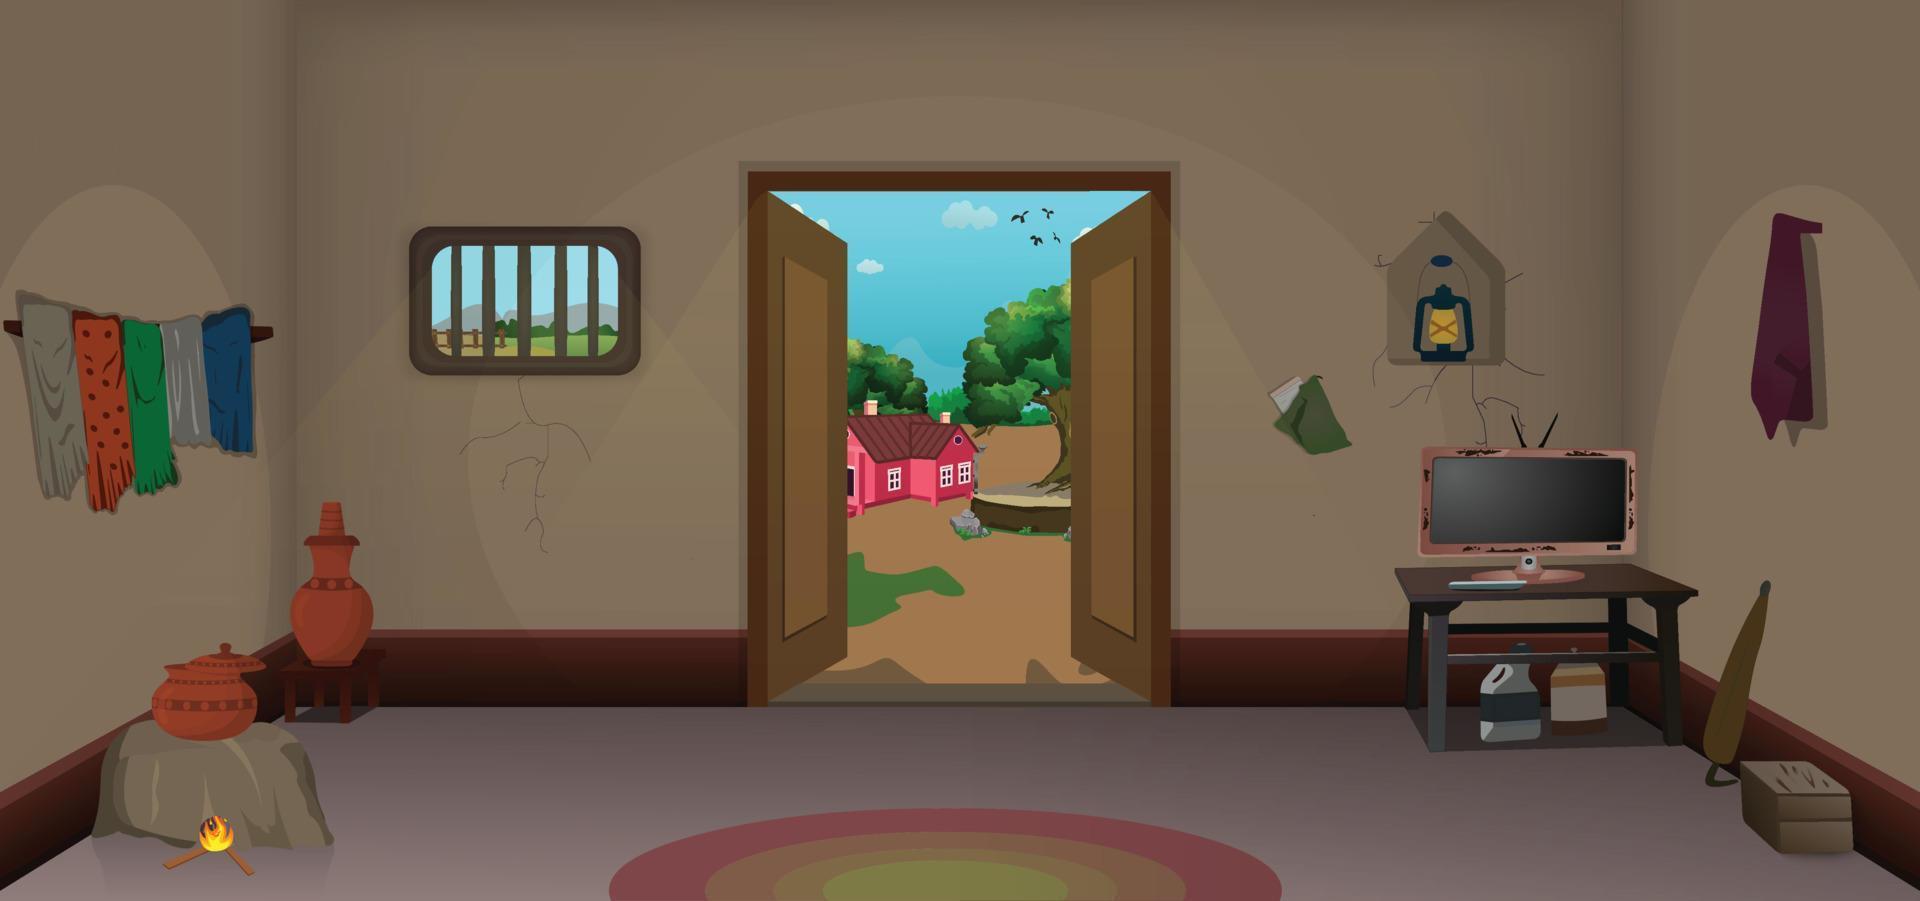 Dorf Arm Zimmer Innerhalb mit Tür Karikatur Hintergrund, Arm Haus Zimmer Innere Vektor Illustrationen.